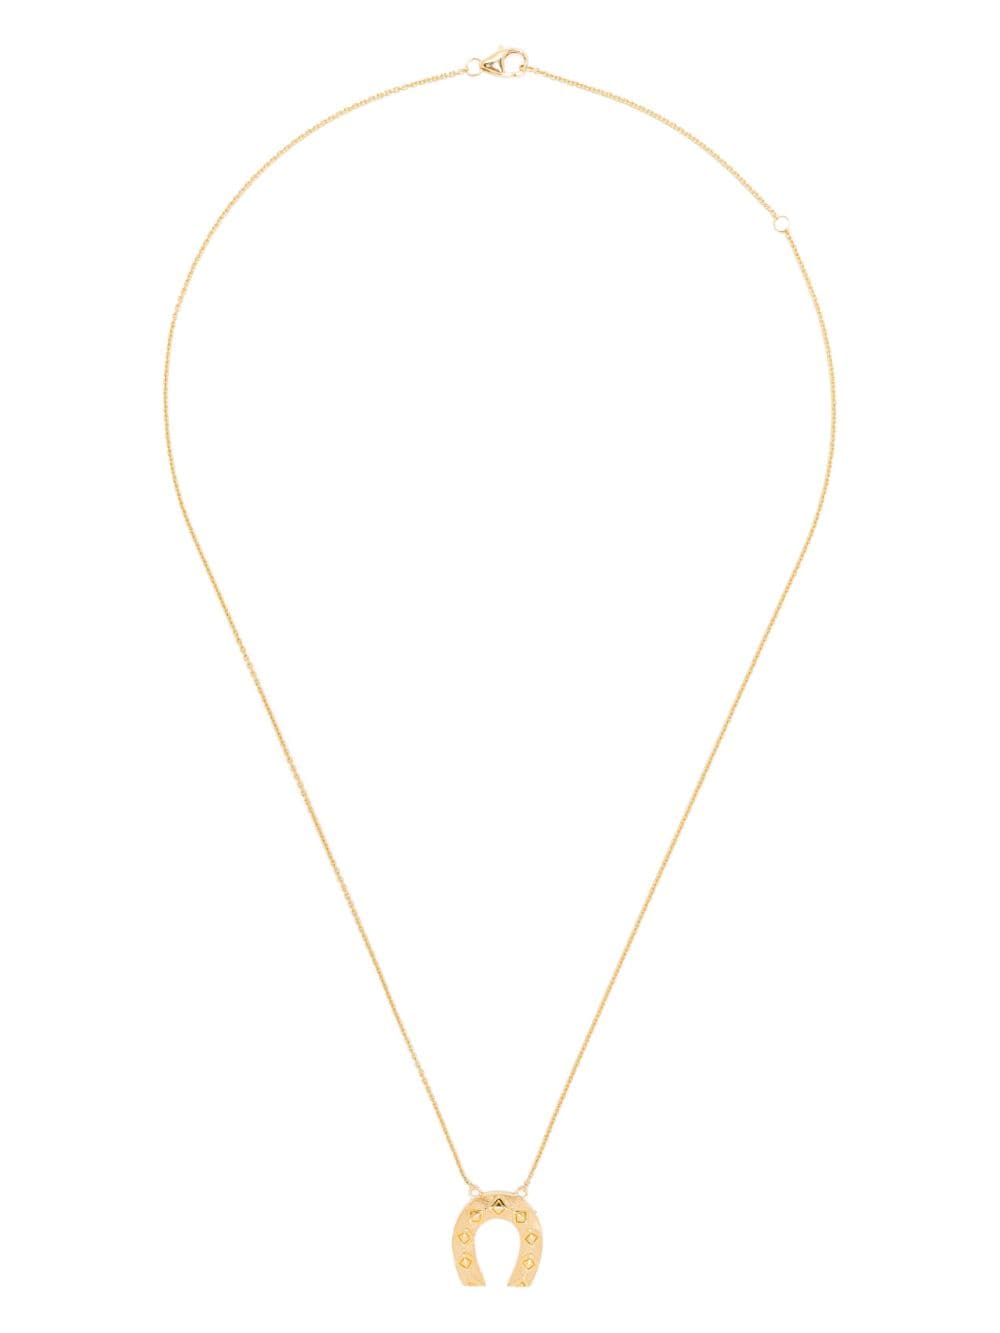 Harwell Godfrey 18kt Yellow Gold Mini Horseshoe Pendant Necklace